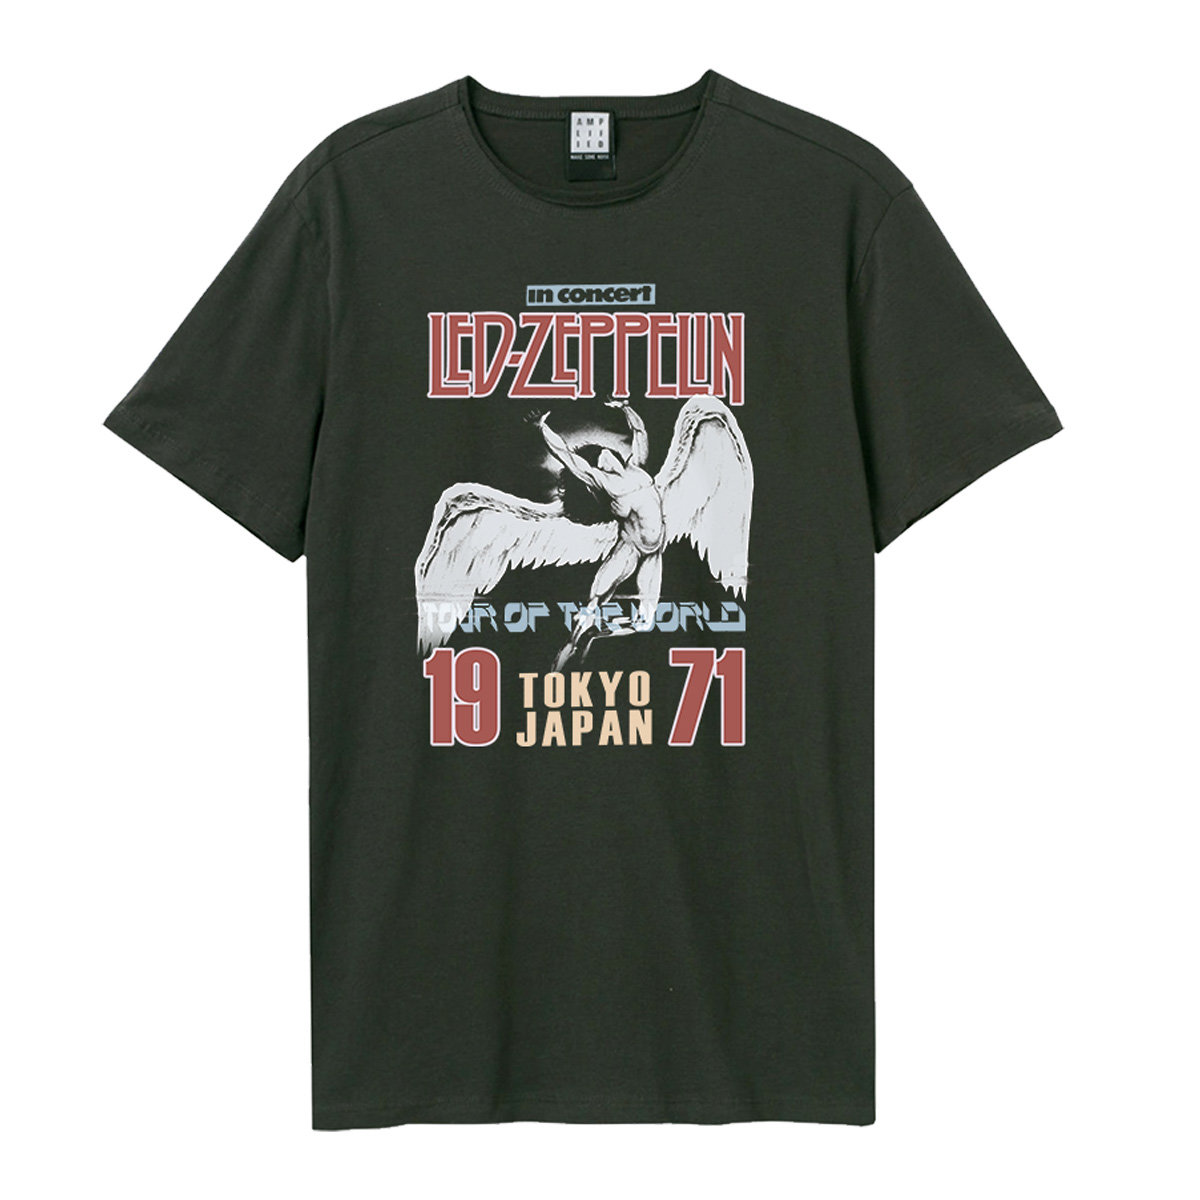 Led Zeppelin - Tokyo 71